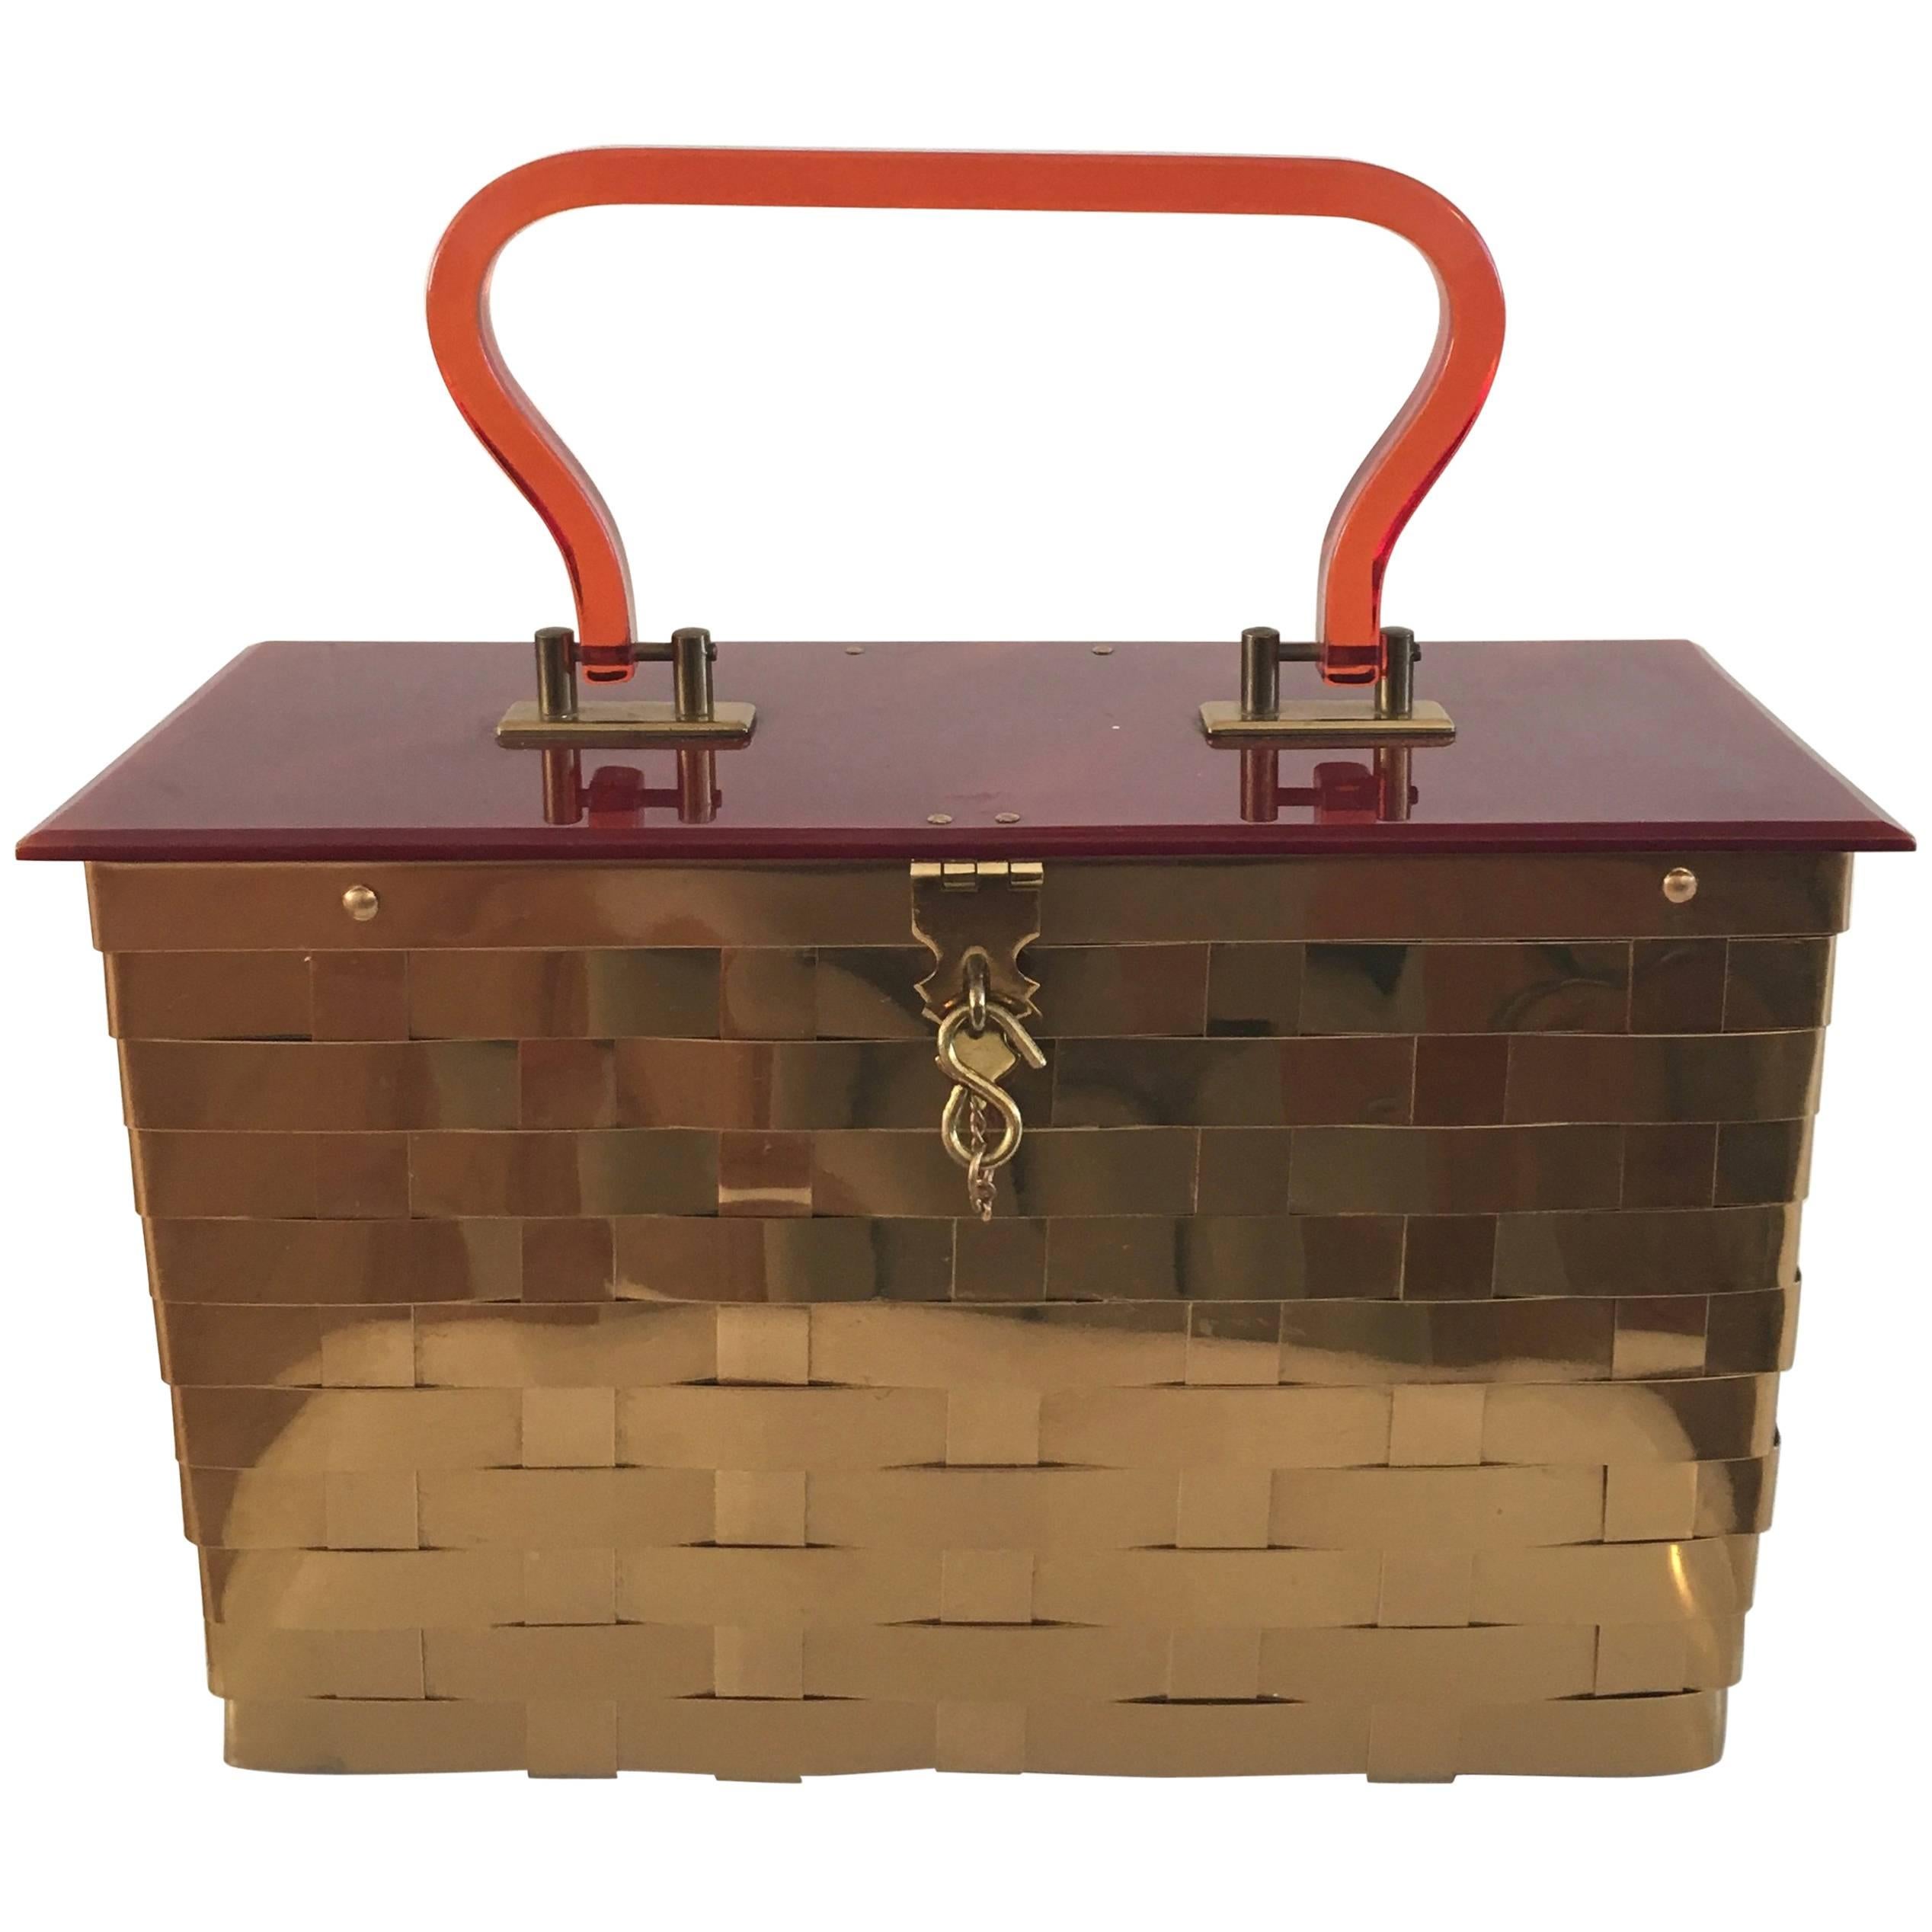 Dorset Rex of Fifth Avenue Gold Metal Basket Handbag. For Sale